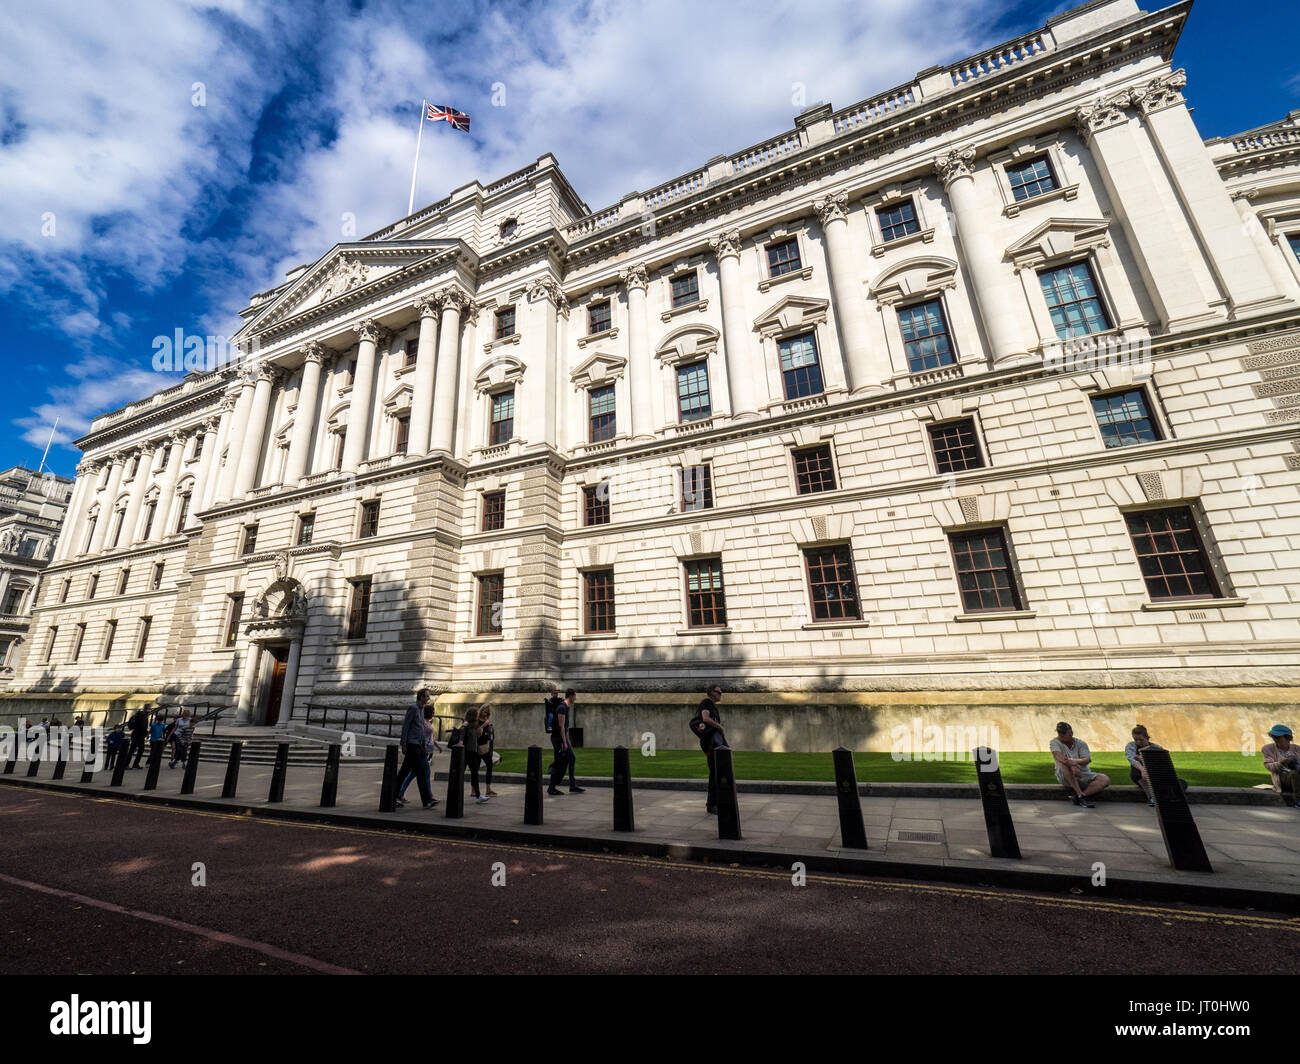 HM Treasury Office in Horse Guards Road, Westminster, London, Großbritannien. Das Finanzministerium steuert und koordiniert die britische Regierung die Ausgaben Stockfoto